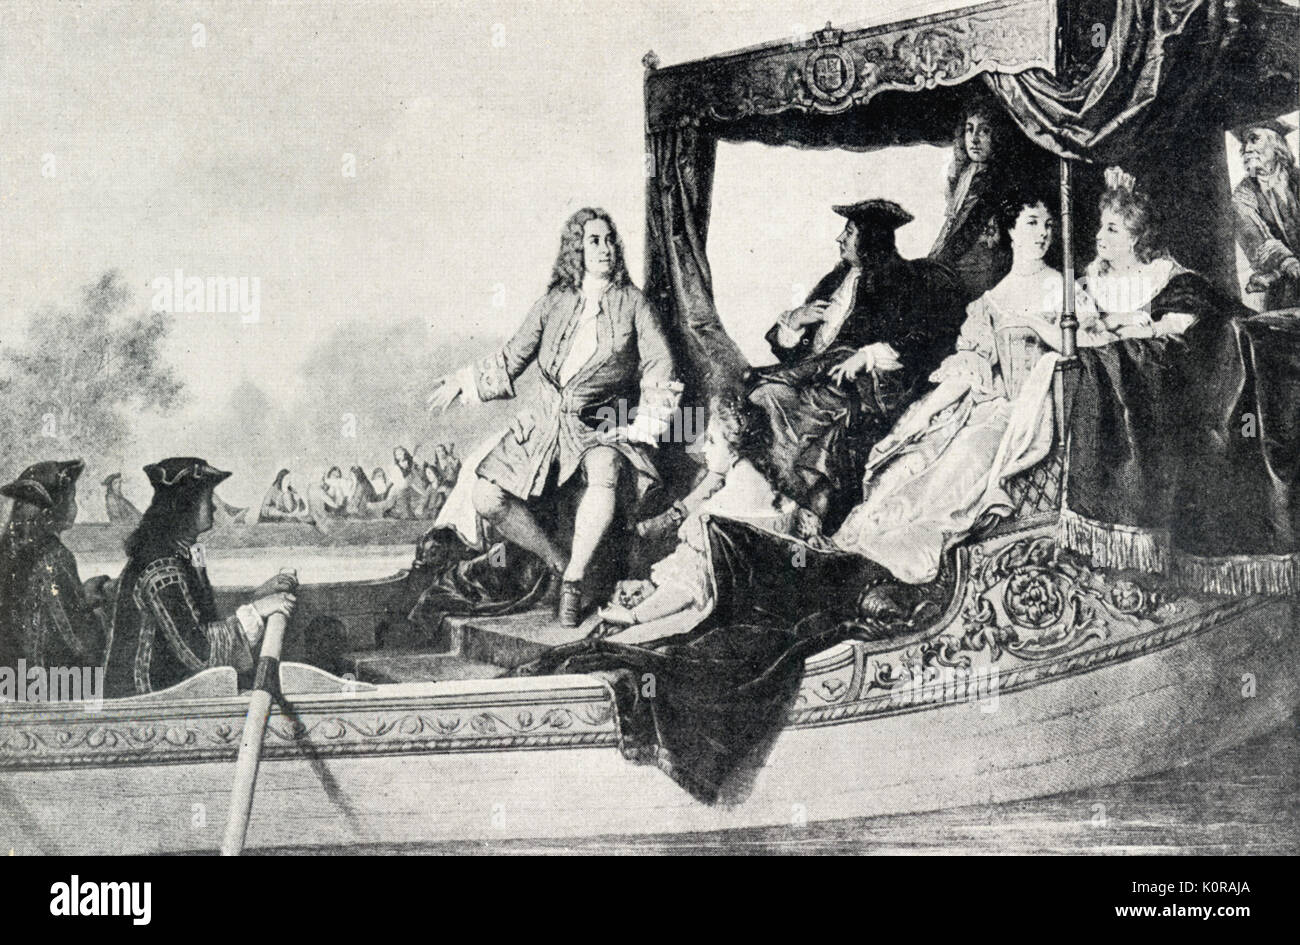 Haendel et George I on Thames, écouter de la musique de l'eau (a joué d'une autre barge) compositeur allemand, 1685-1759 Banque D'Images